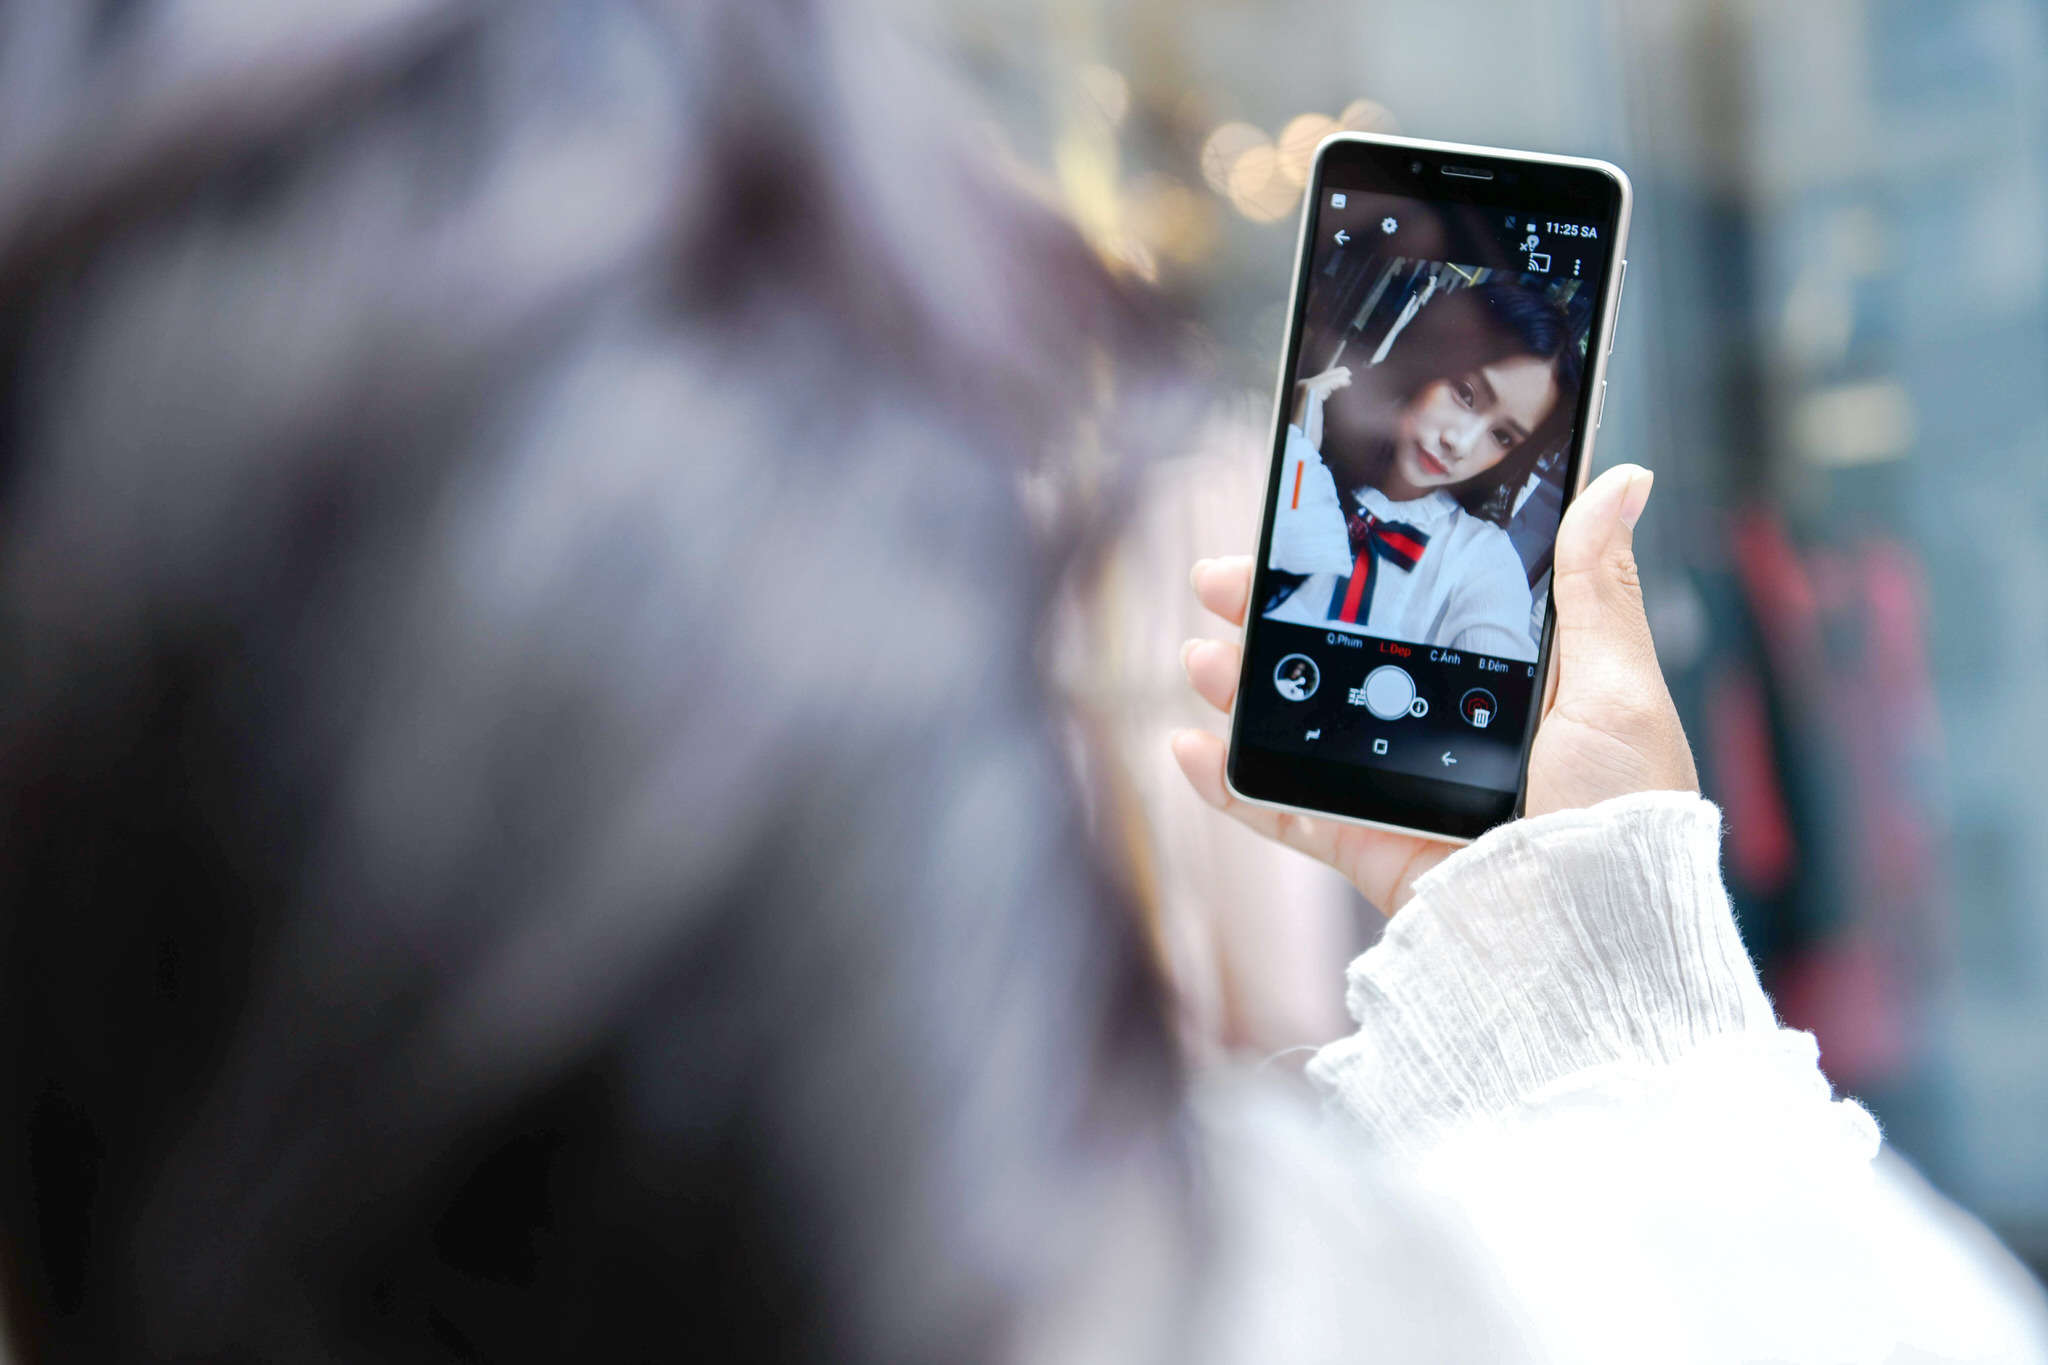 Asanzo A1 - Smartphone Việt đầu tiên chạy Android Go hướng tới người dùng phổ thông với mức giá dưới 2 triệu đồng